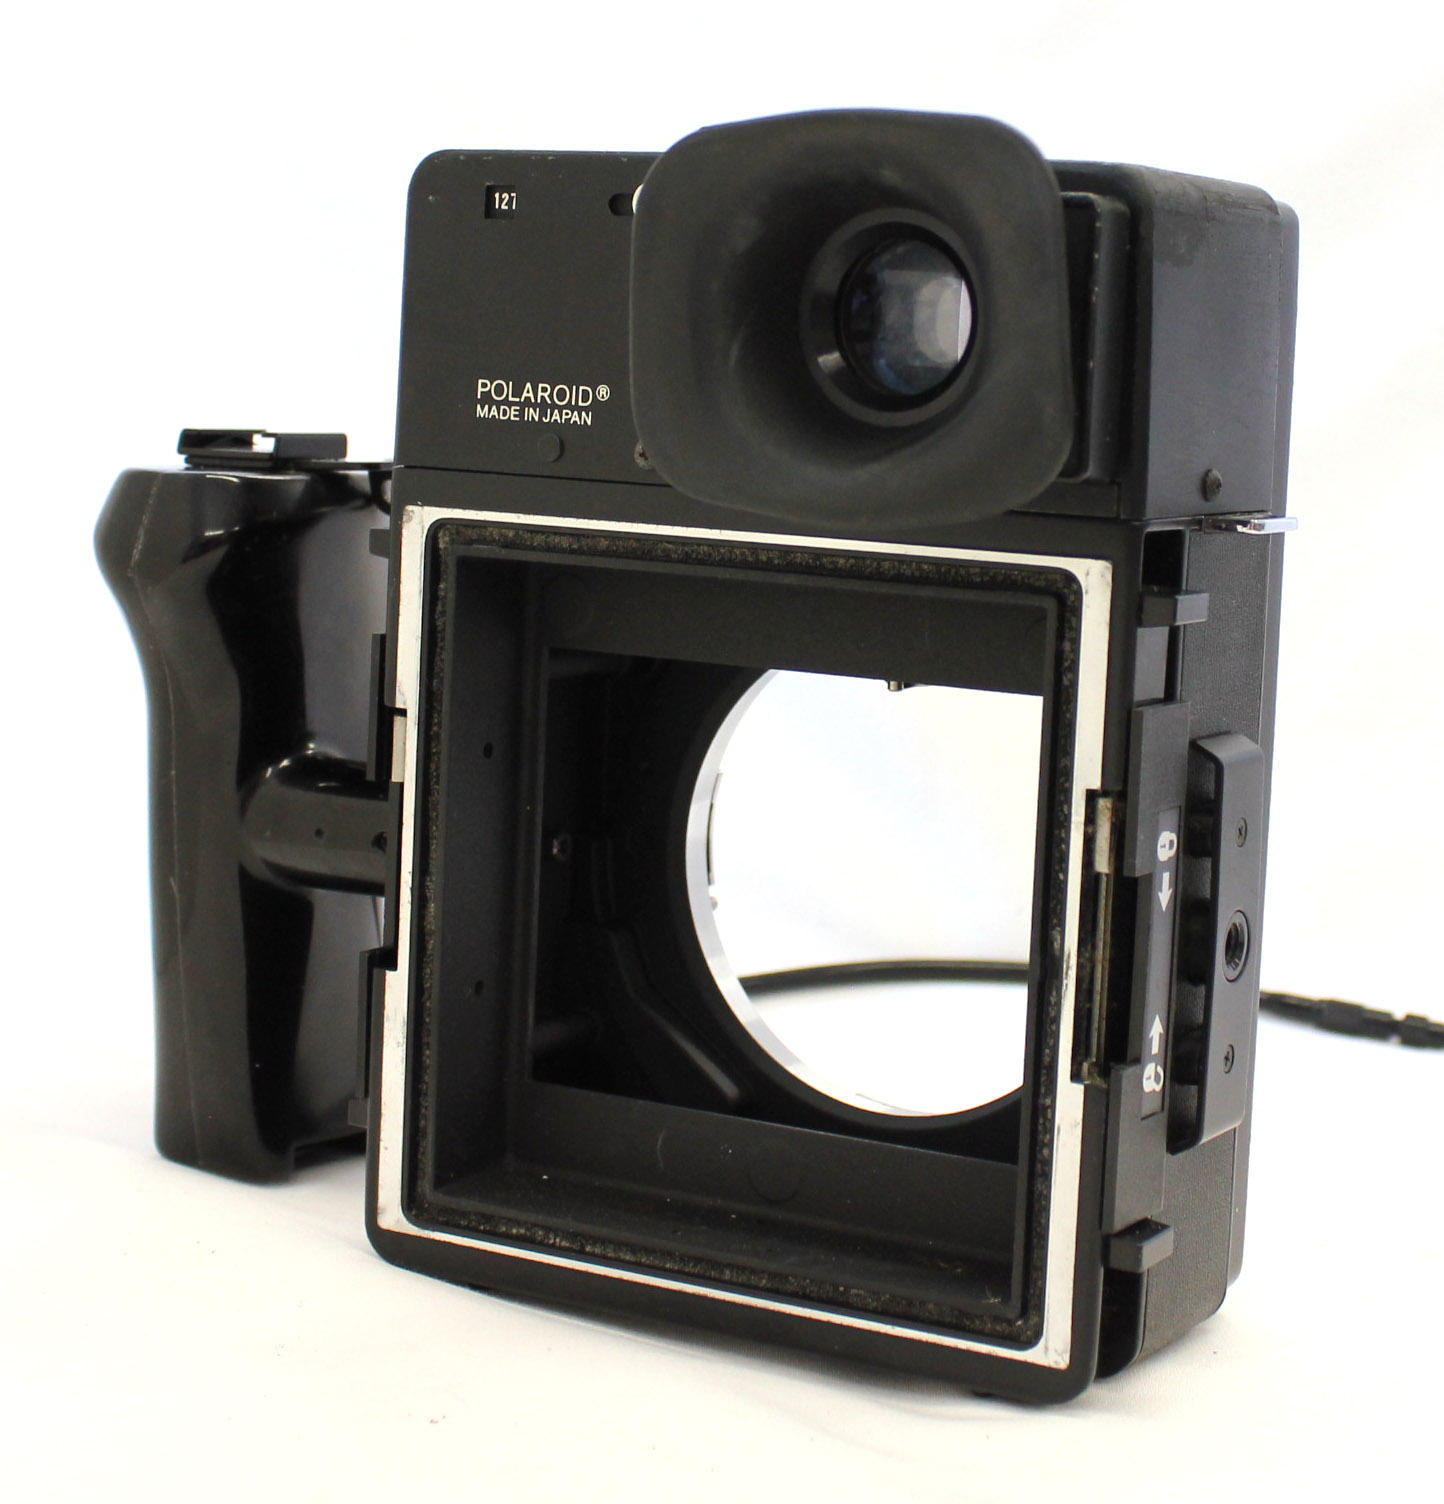  Polaroid 600 SE Instant Camera w/ Mamiya 127mm F/4.7 Lens and Polaroid Back from Japan Photo 5